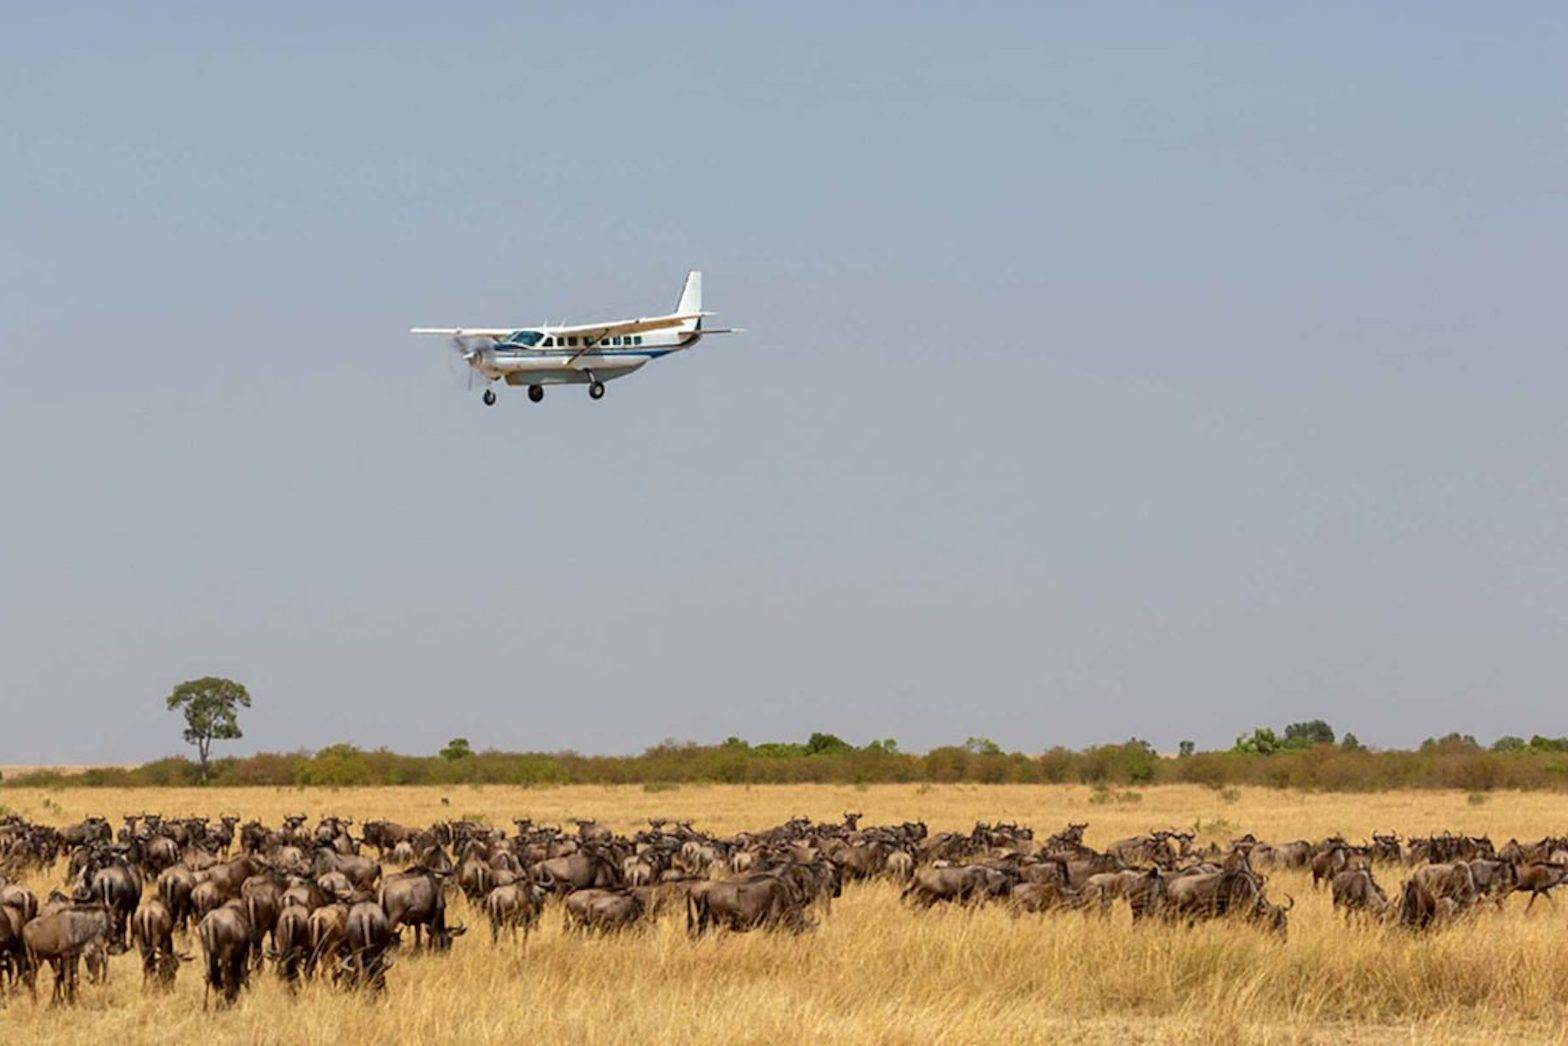 Dernier safari au Serengeti, retour sur Arusha et fin du séjour